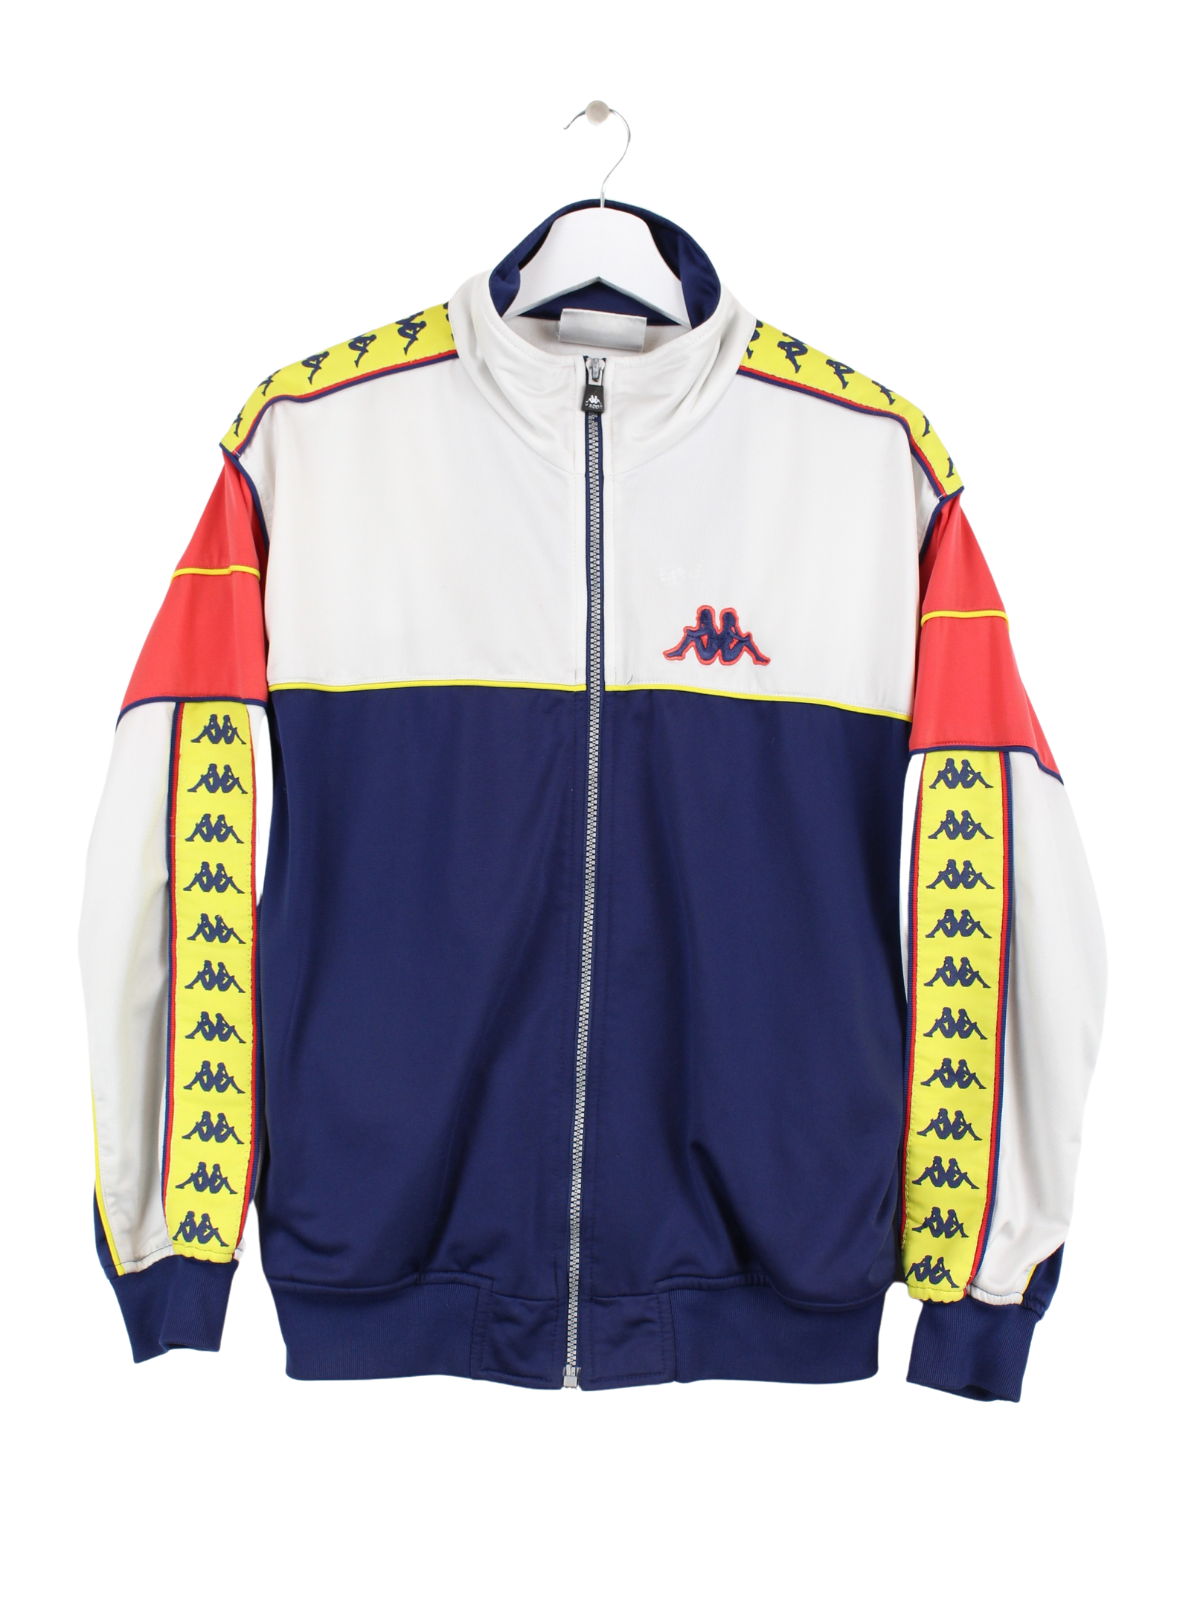 Kappa Training Jacket Multicolored – Peeces S